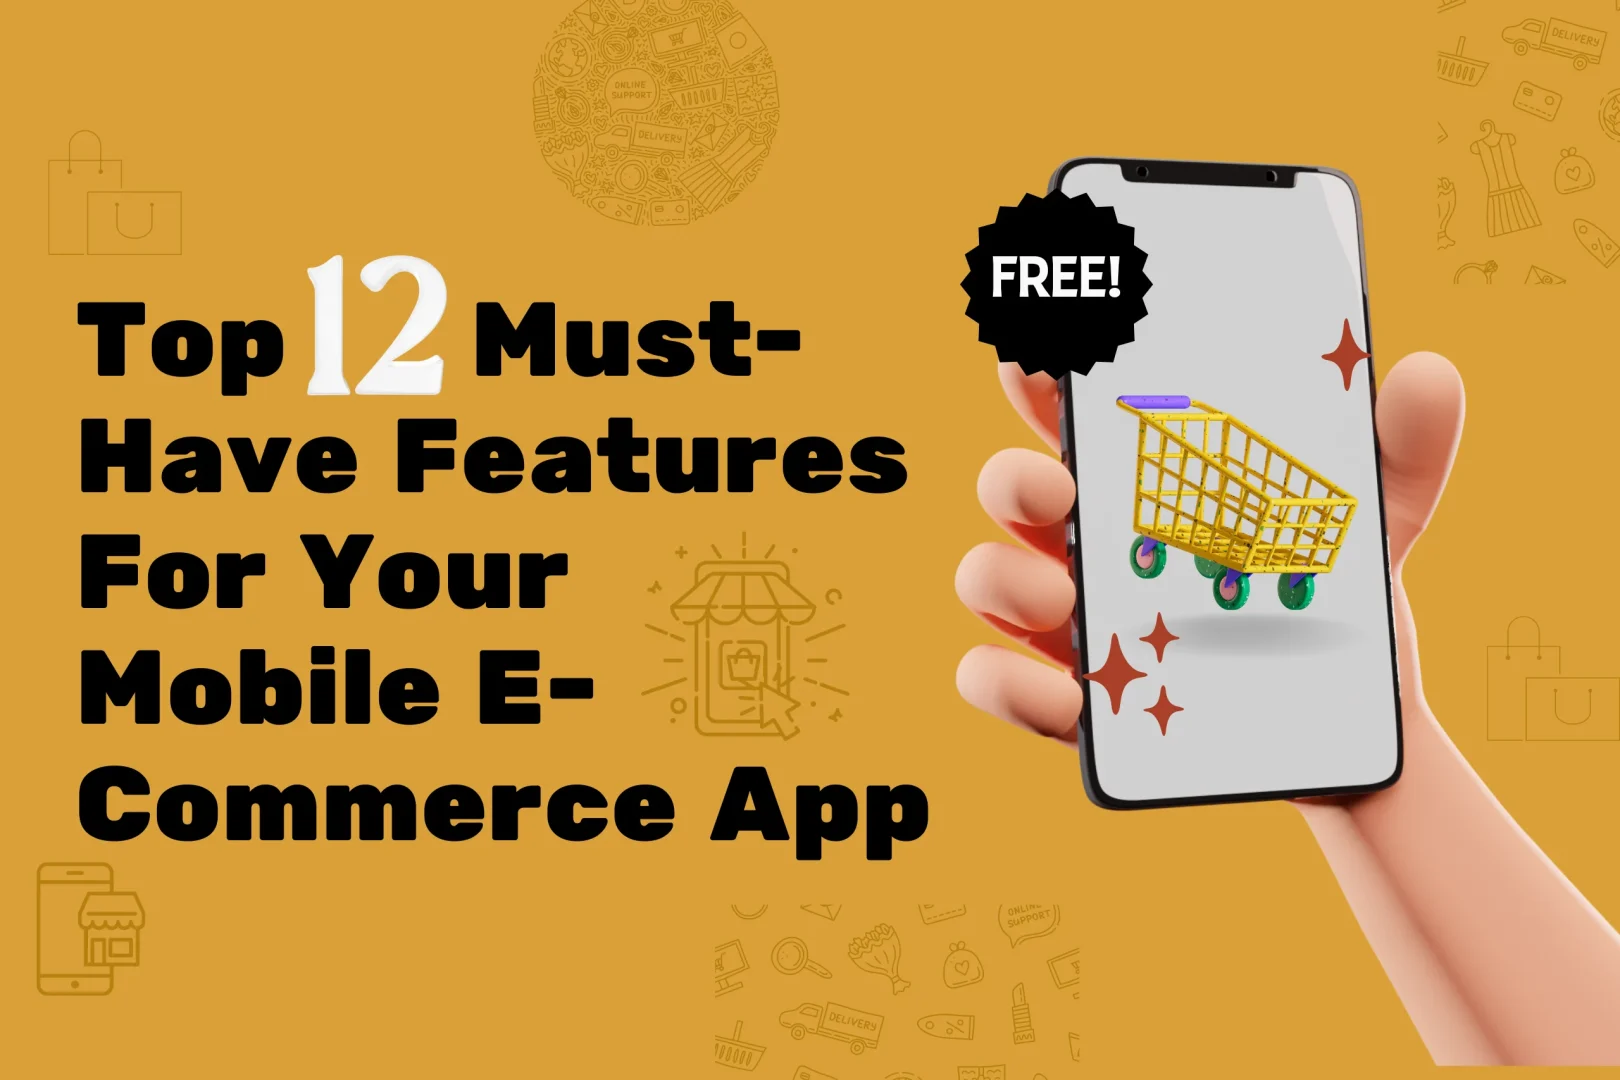 e-commerce app in Dubai